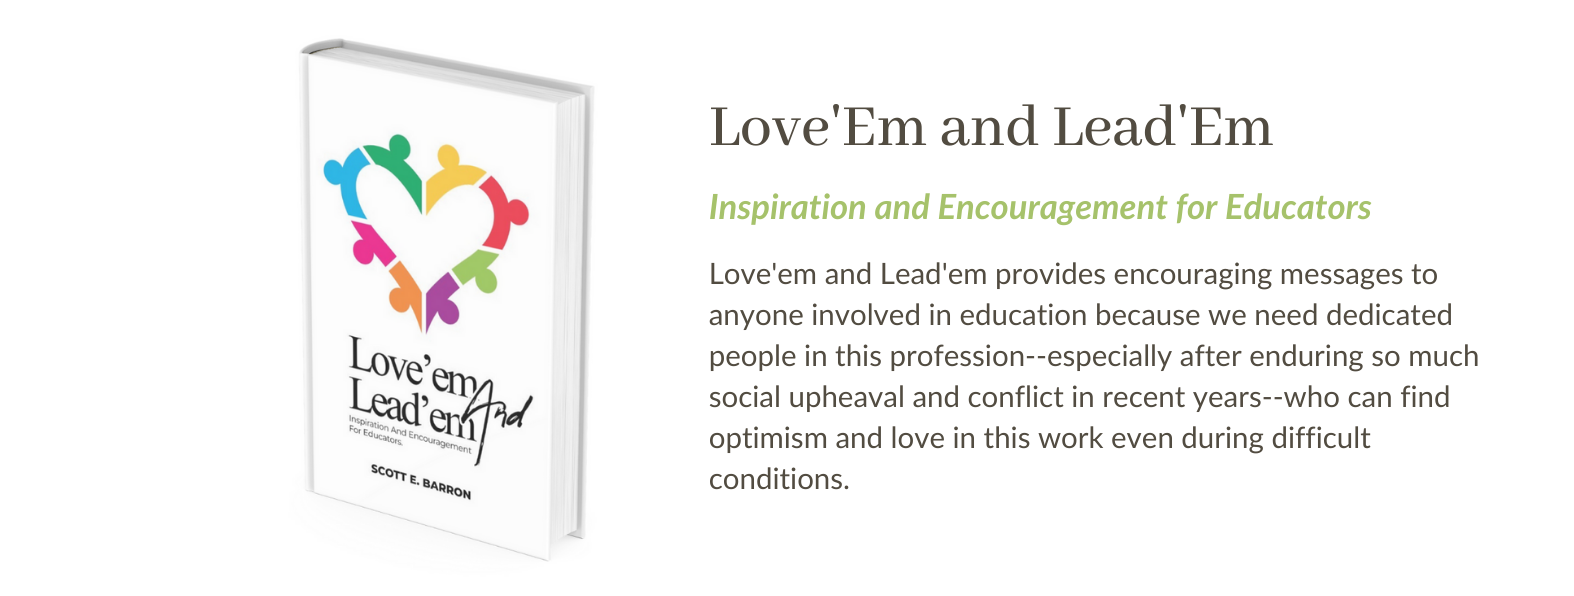 Love'em and Lead'em Book